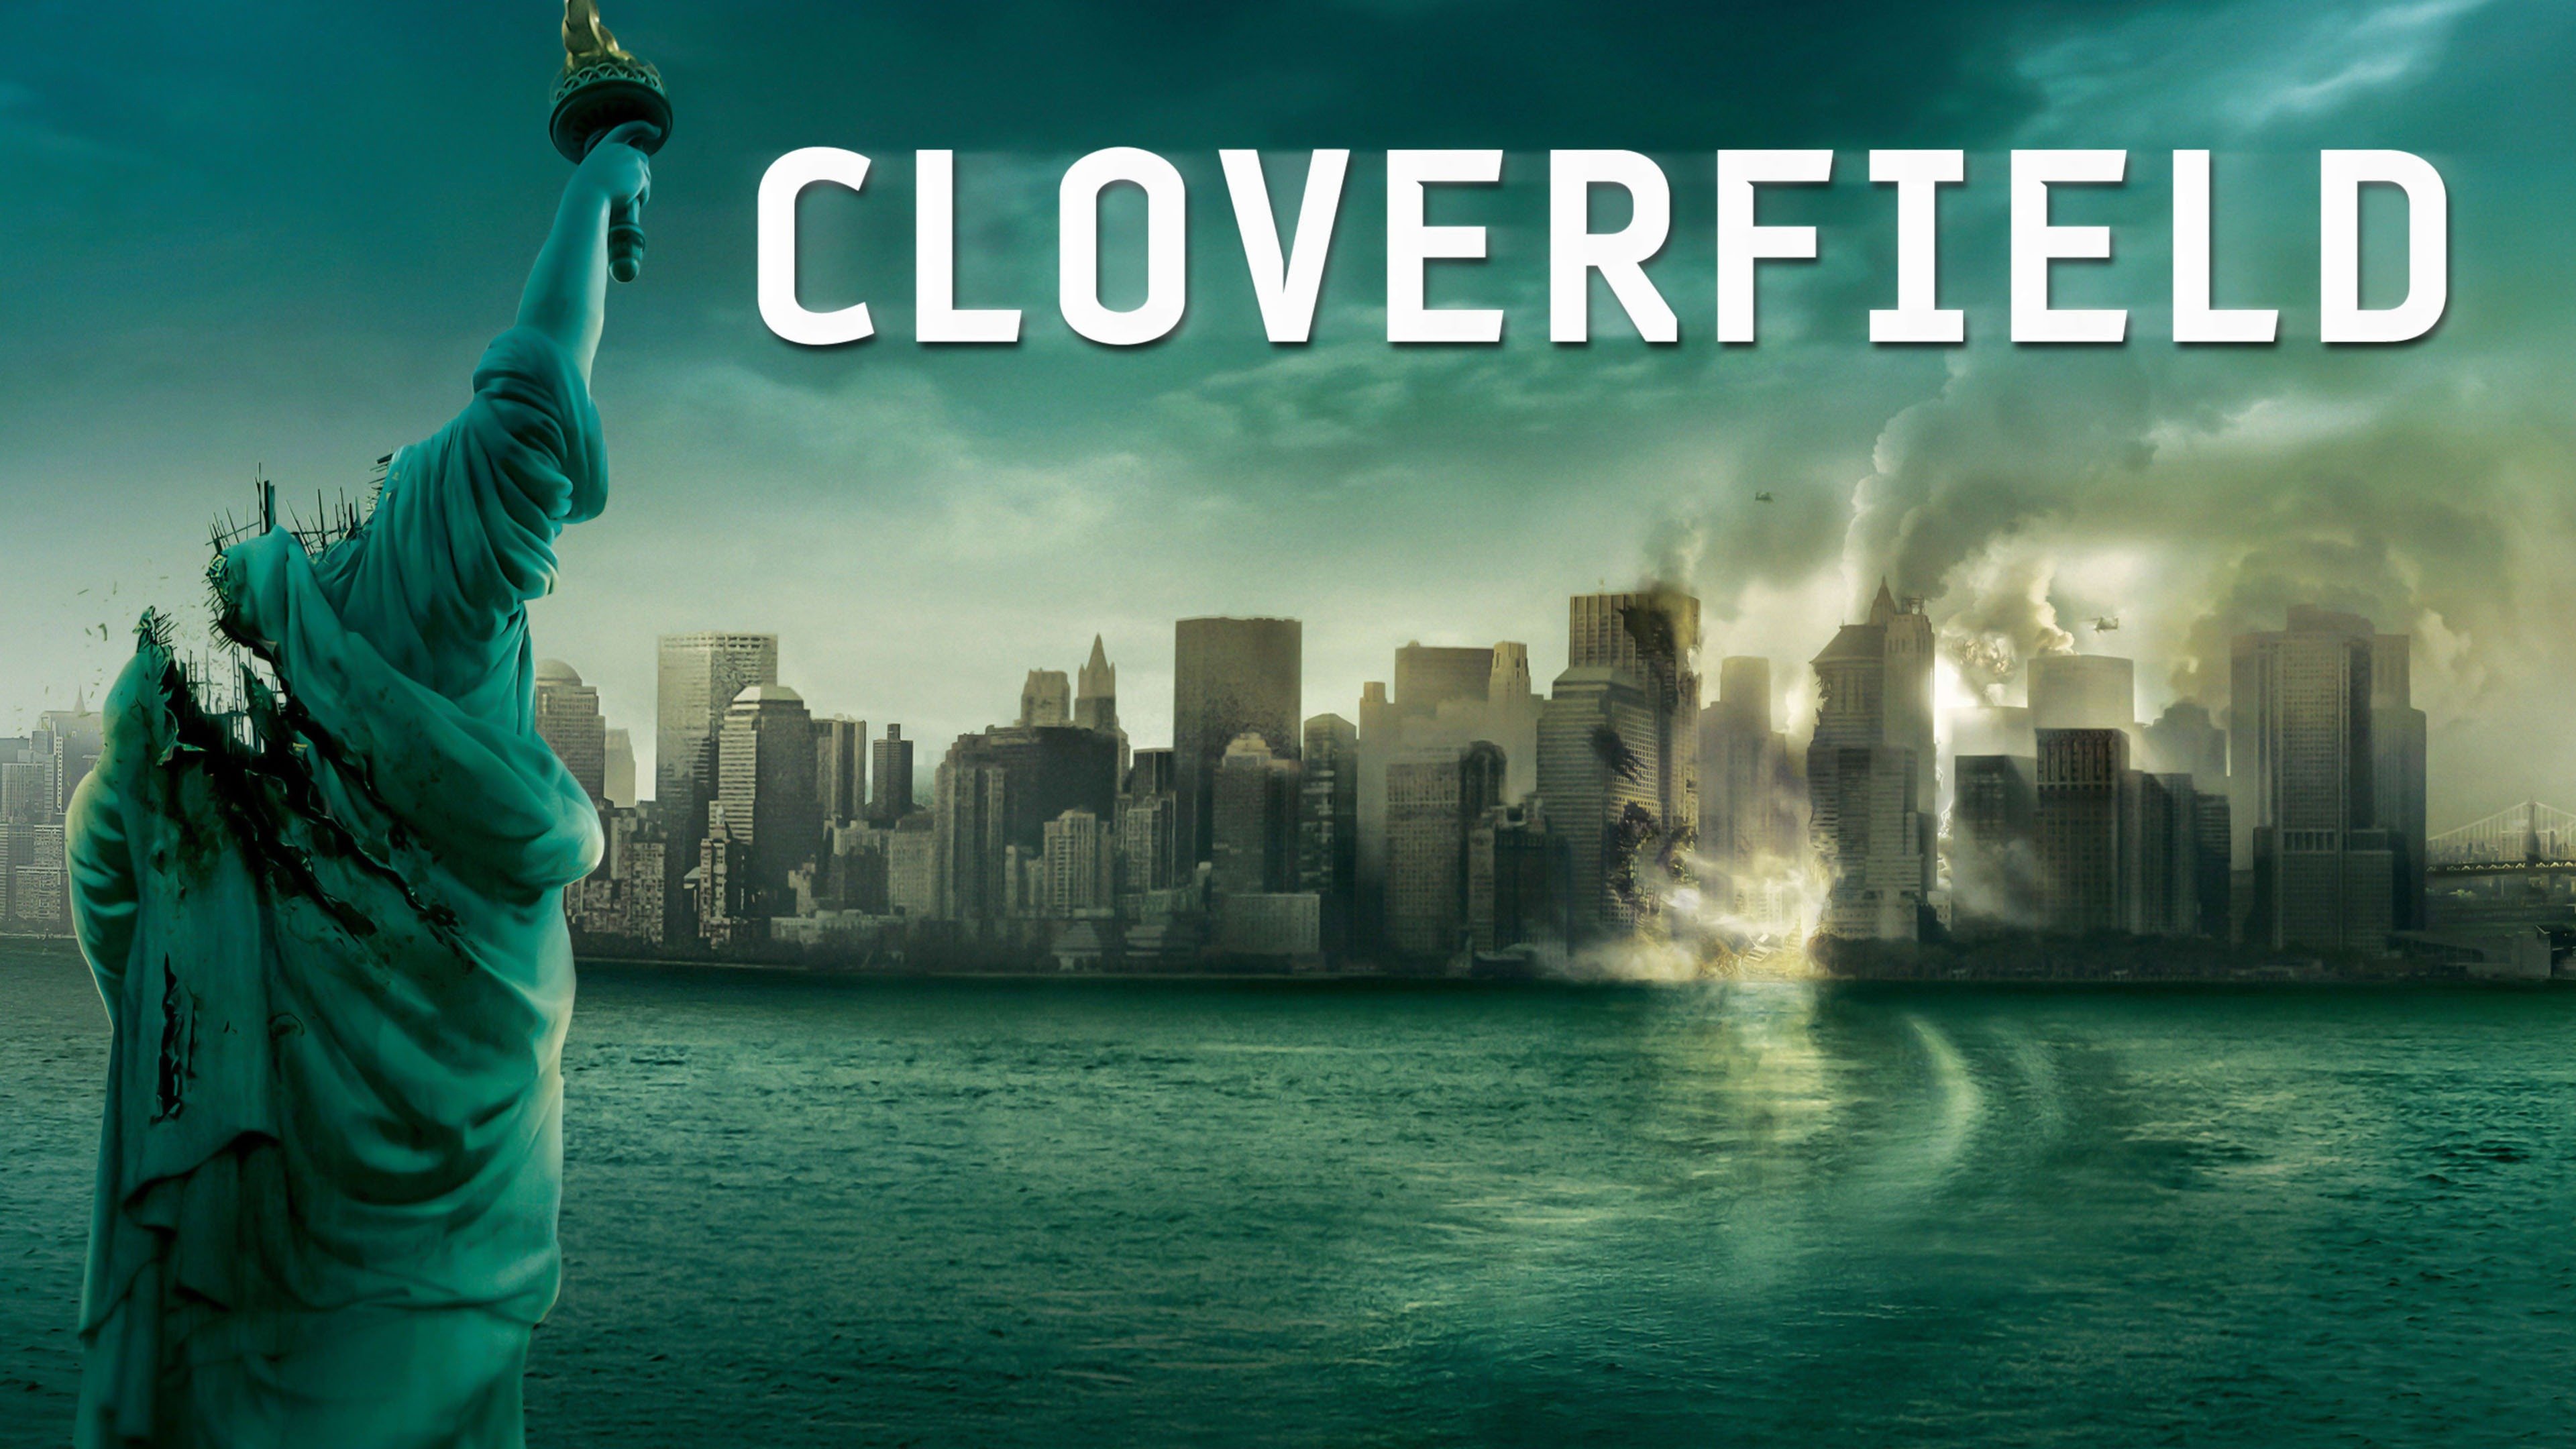 WATCH FROM​ HOME​ - จักรวาล​ “CLOVERFIELD​” 1.Cloverfield (2008)​ 2.10  Cloverfield Lane (2016) 3.The Cloverfield Paradox (2018) ดูครบทั้ง​ 3  เรื่อง​ ทาง​ Netflix​ #Cloverfield #Netflix​ #NetflixTH | Facebook